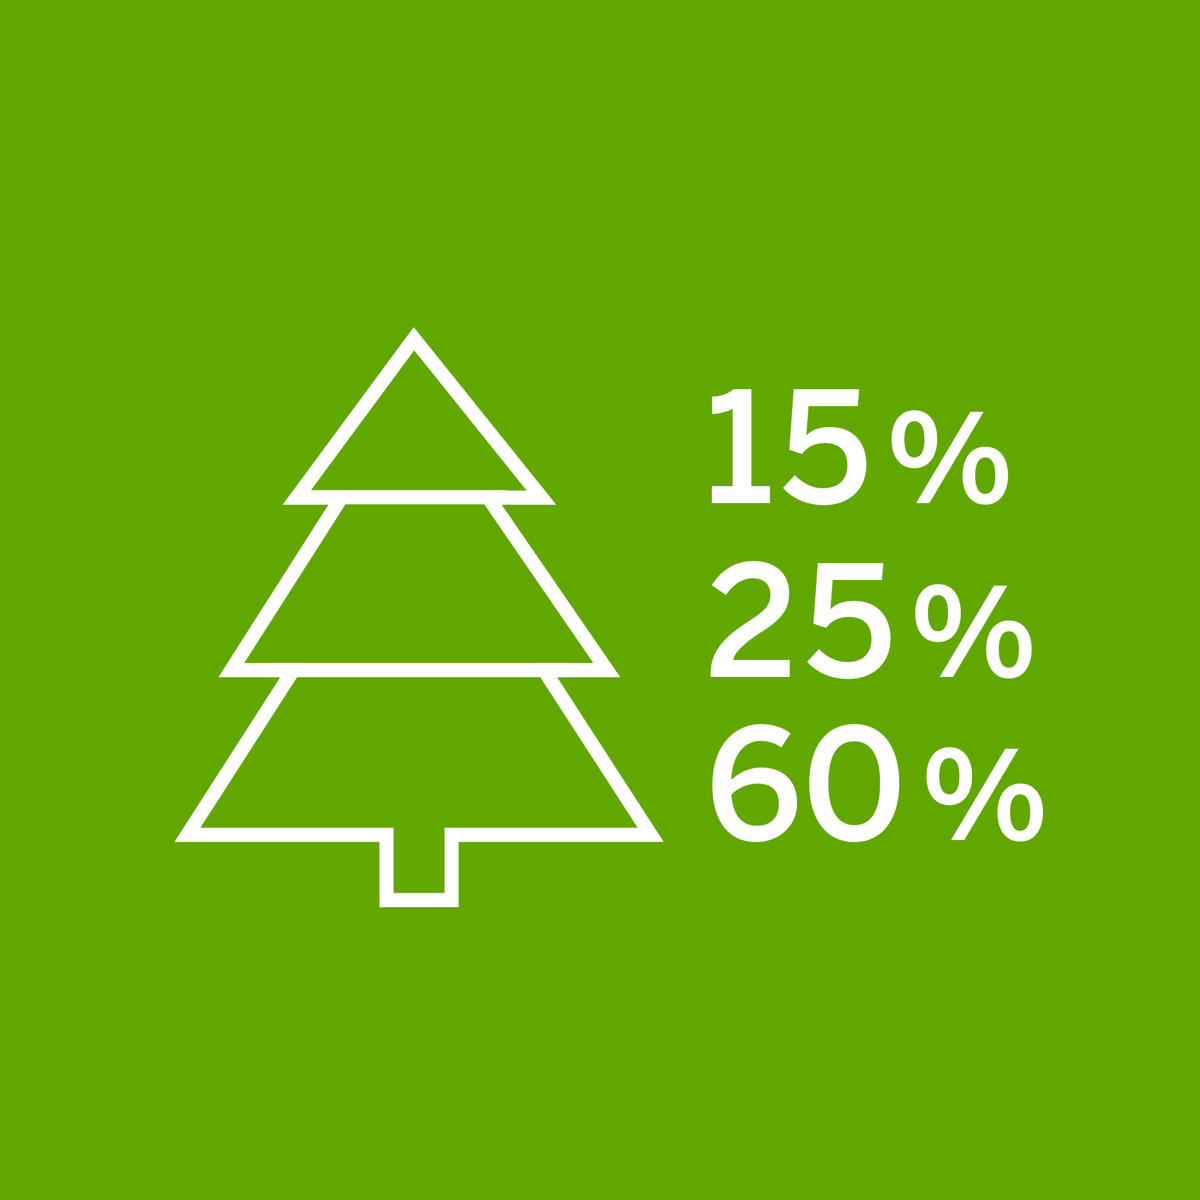 Puusta käytetään 100 %: 15 % energiaan, 25 % selluun ja 60 % puutavaraan.